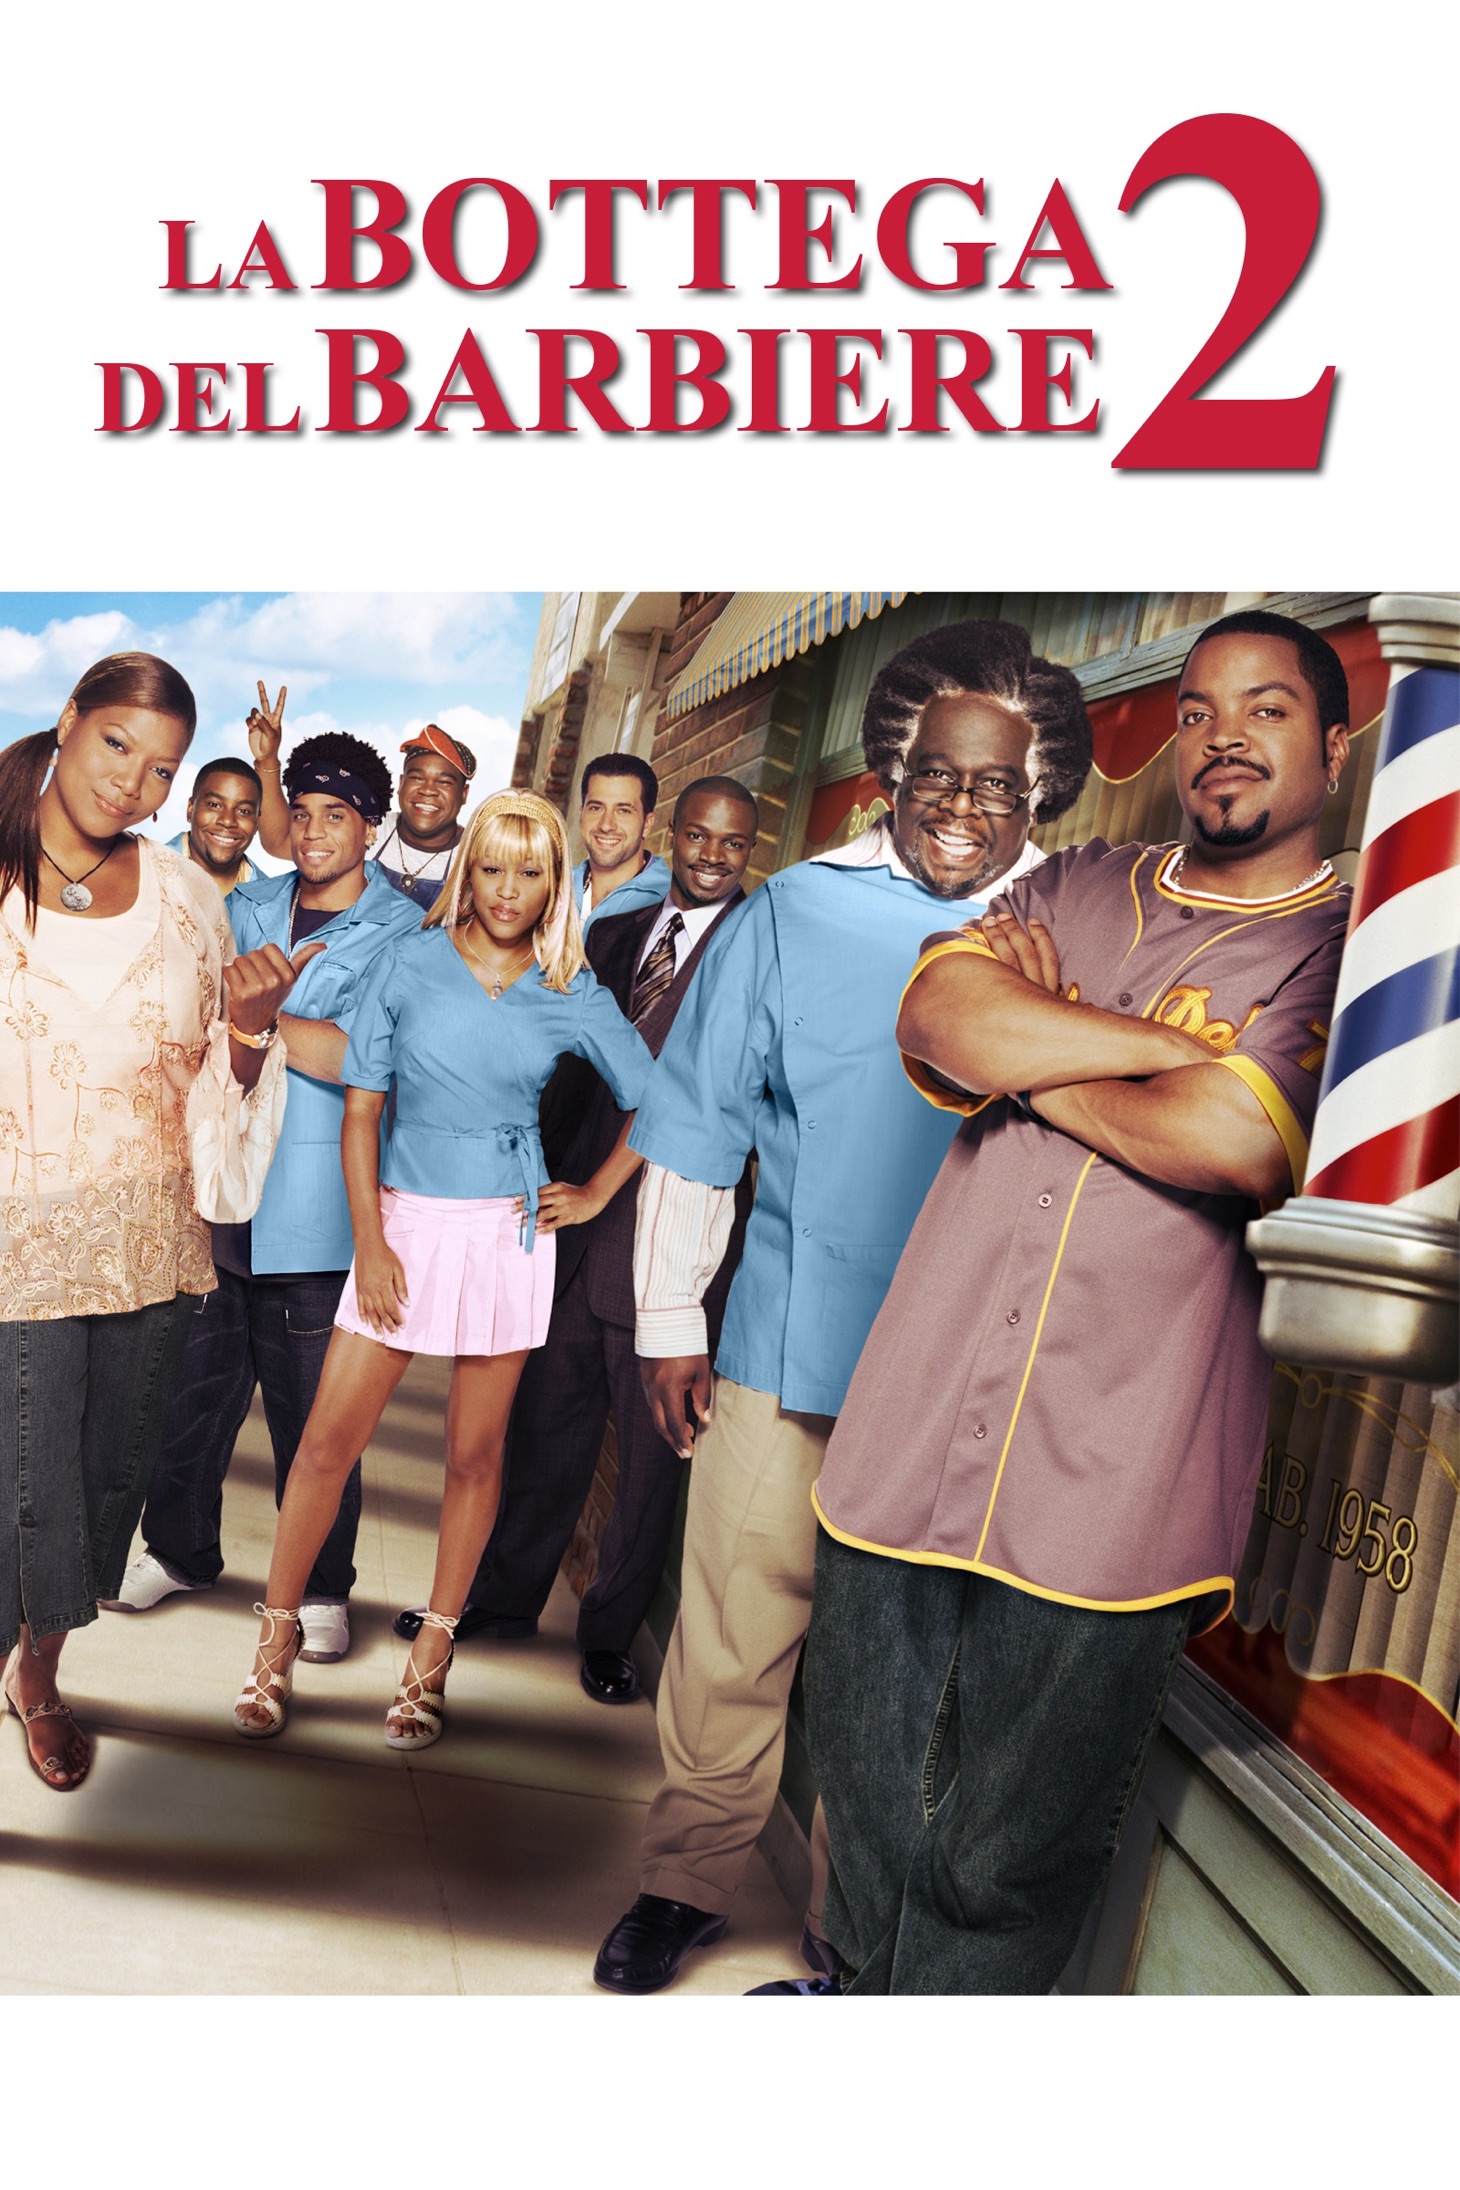 La bottega del barbiere 2 (2004)